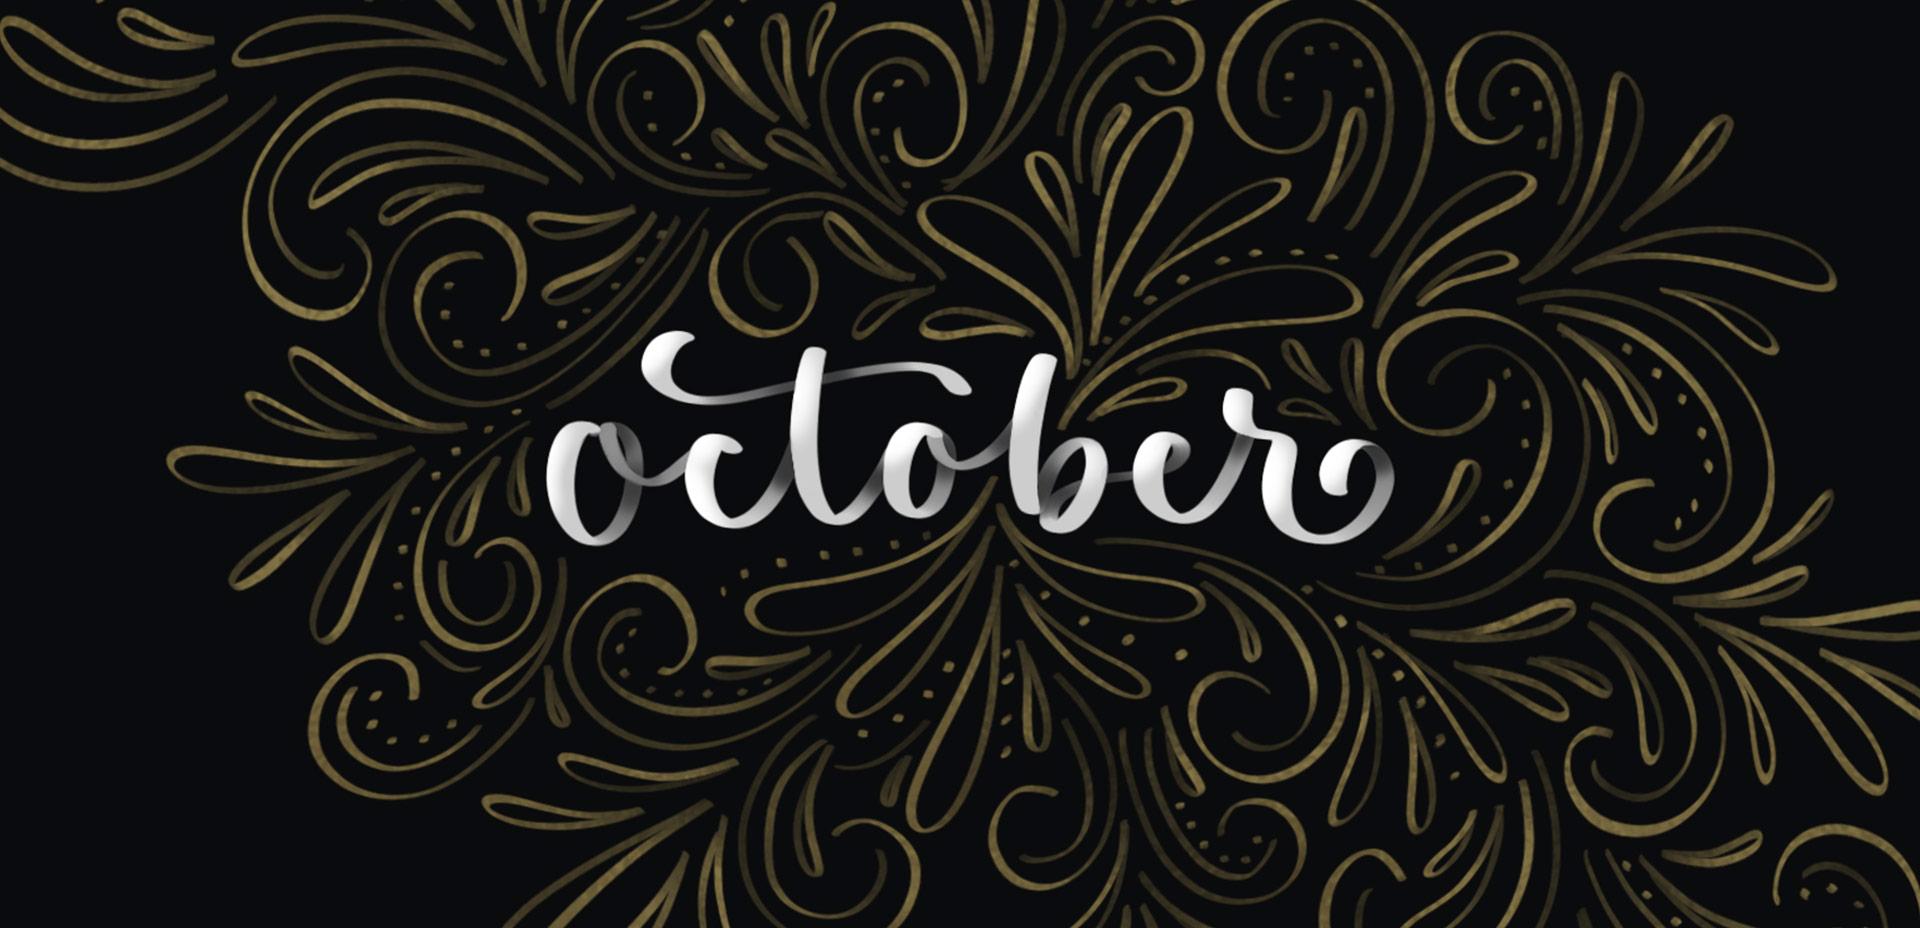 Freebie: October 2019 Desktop Wallpaper